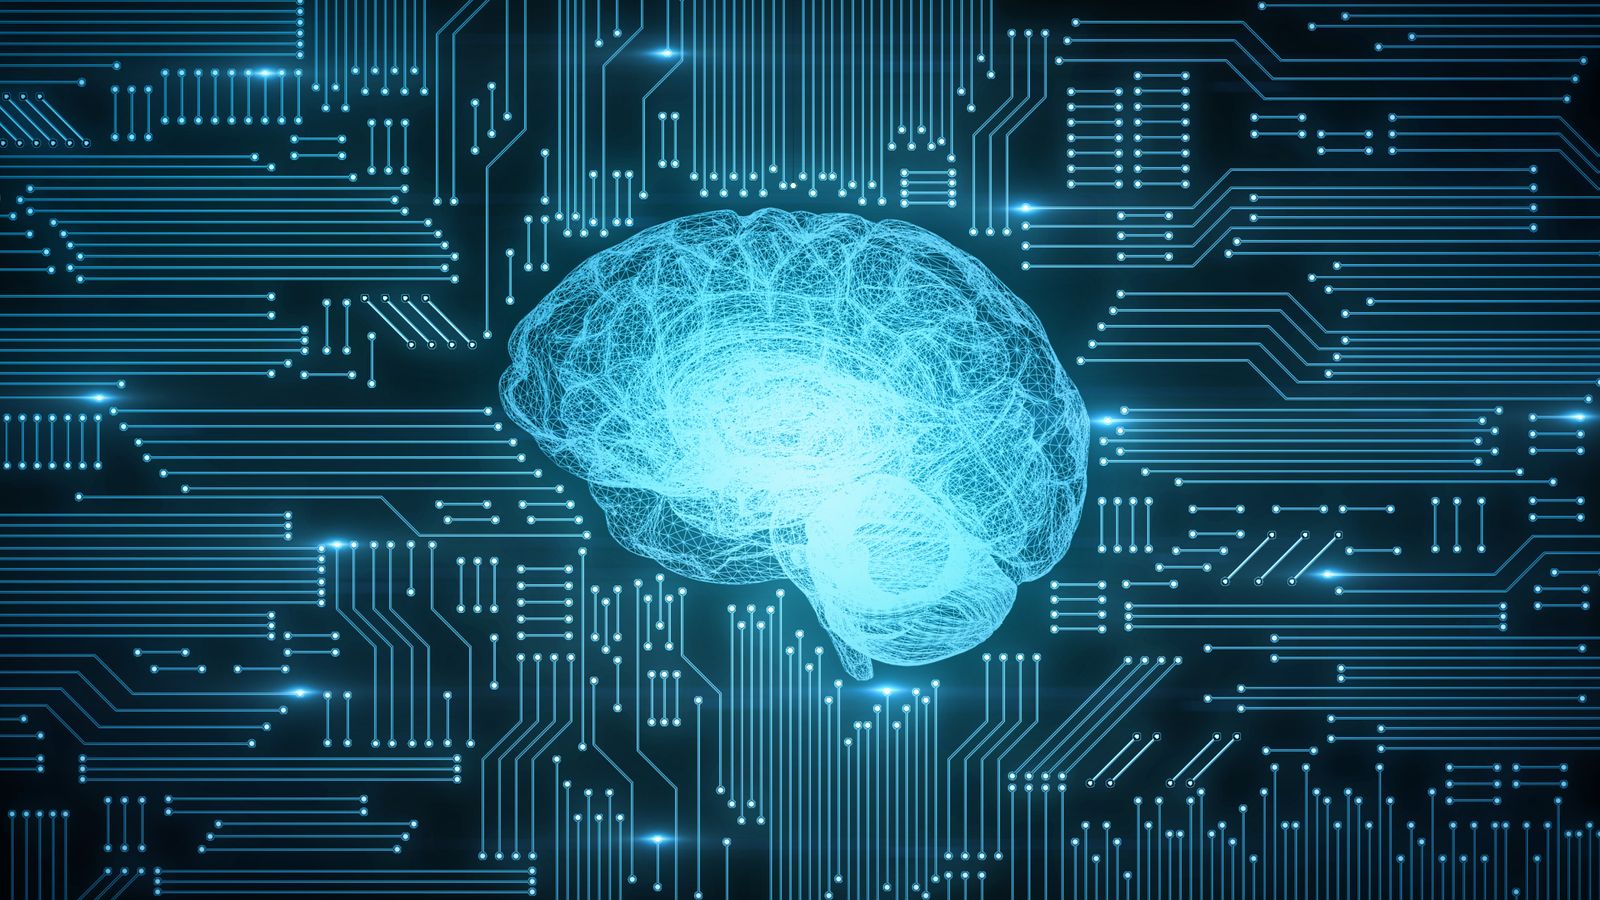 ‘Parrain de l’IA’ Geoffrey Hinton met en garde contre l’avancement de la technologie après avoir quitté son emploi chez Google |  Actualités scientifiques et techniques